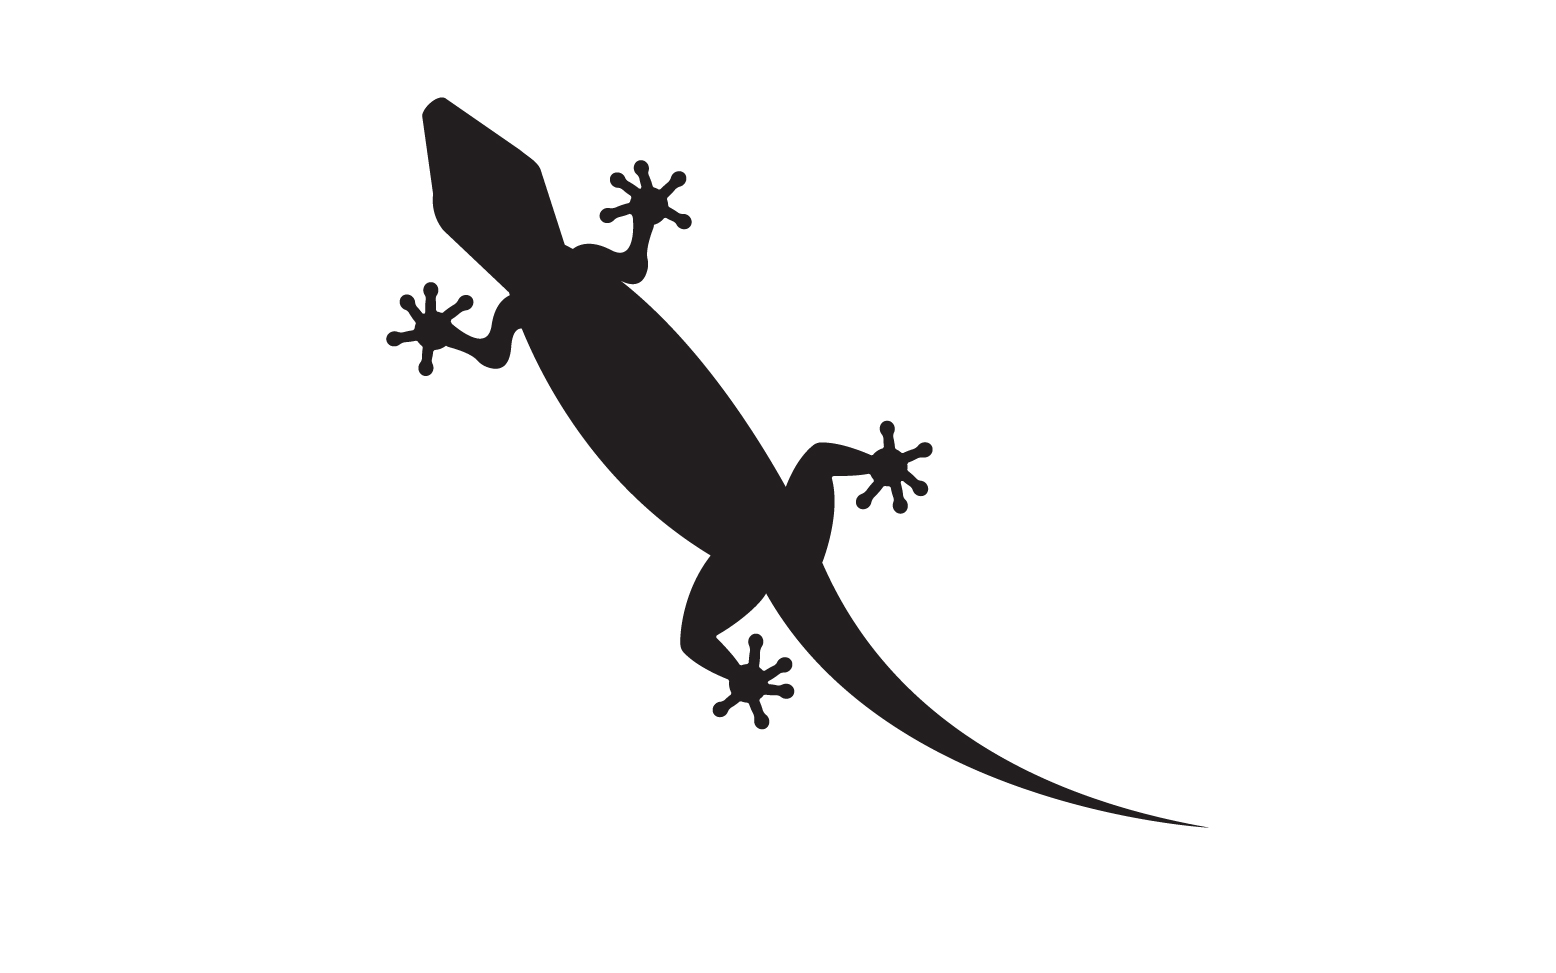 Lizard chameleon home lizard logo v30